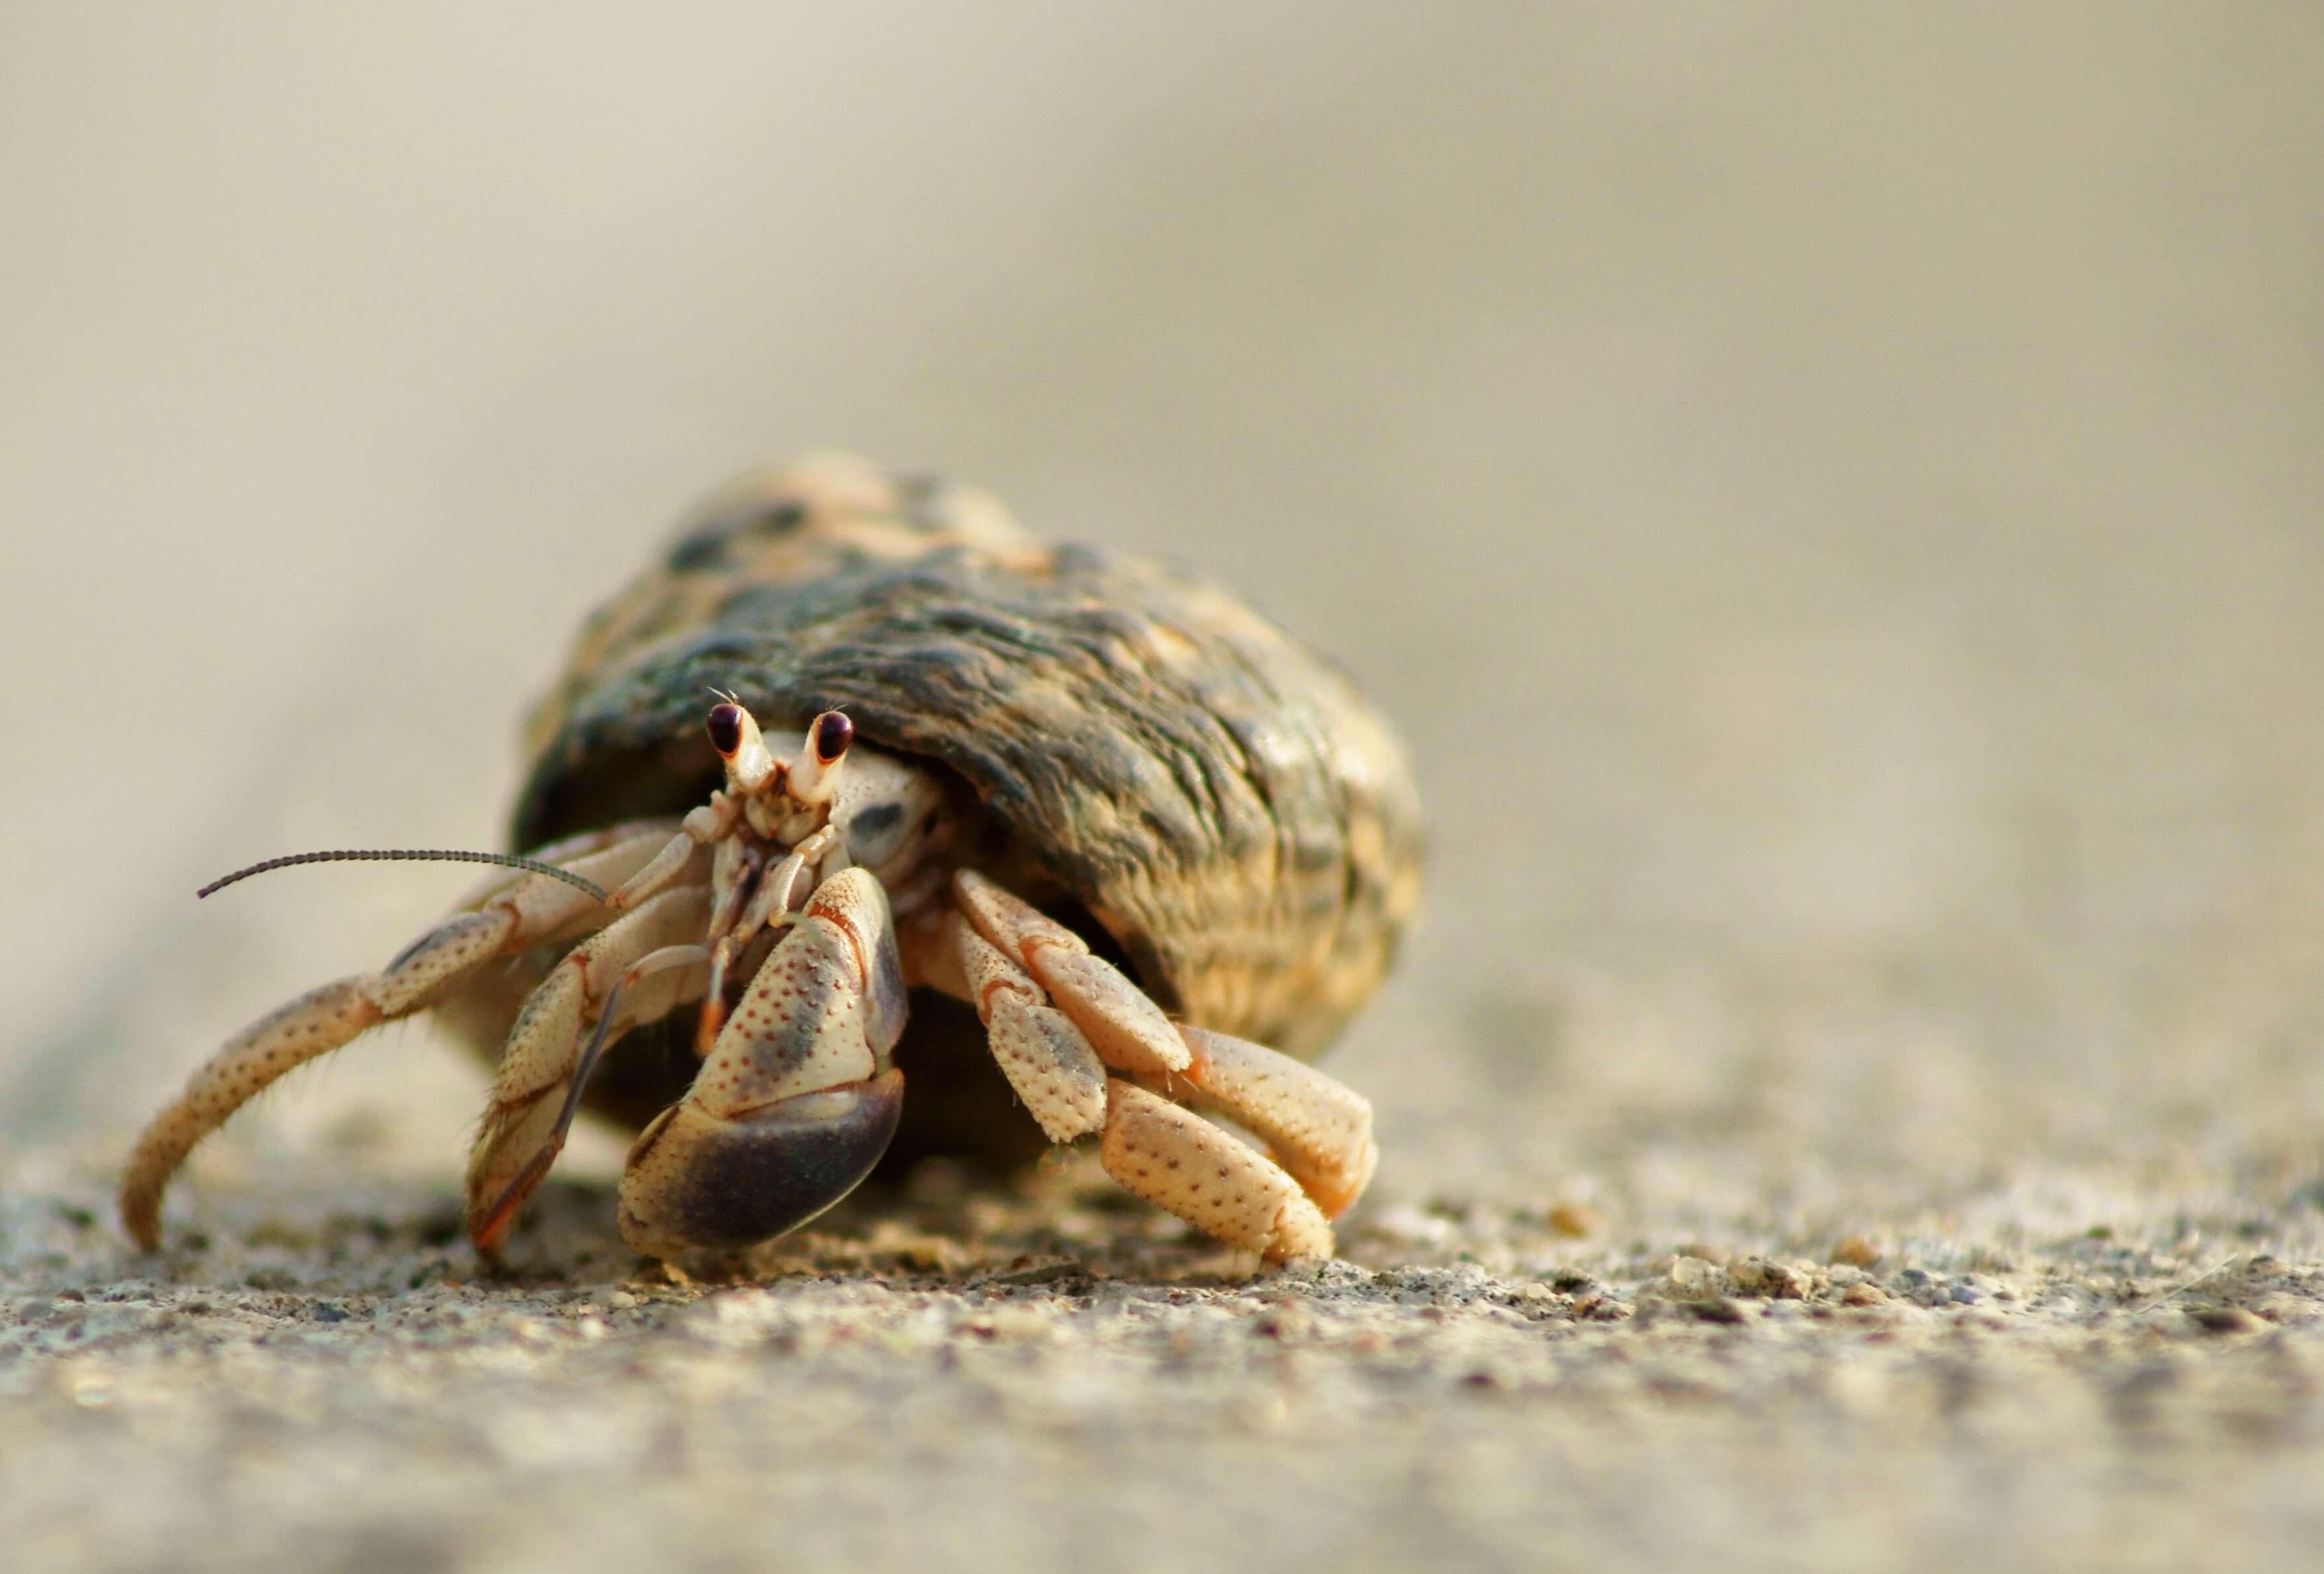 A crab walks along the sand at a beach.